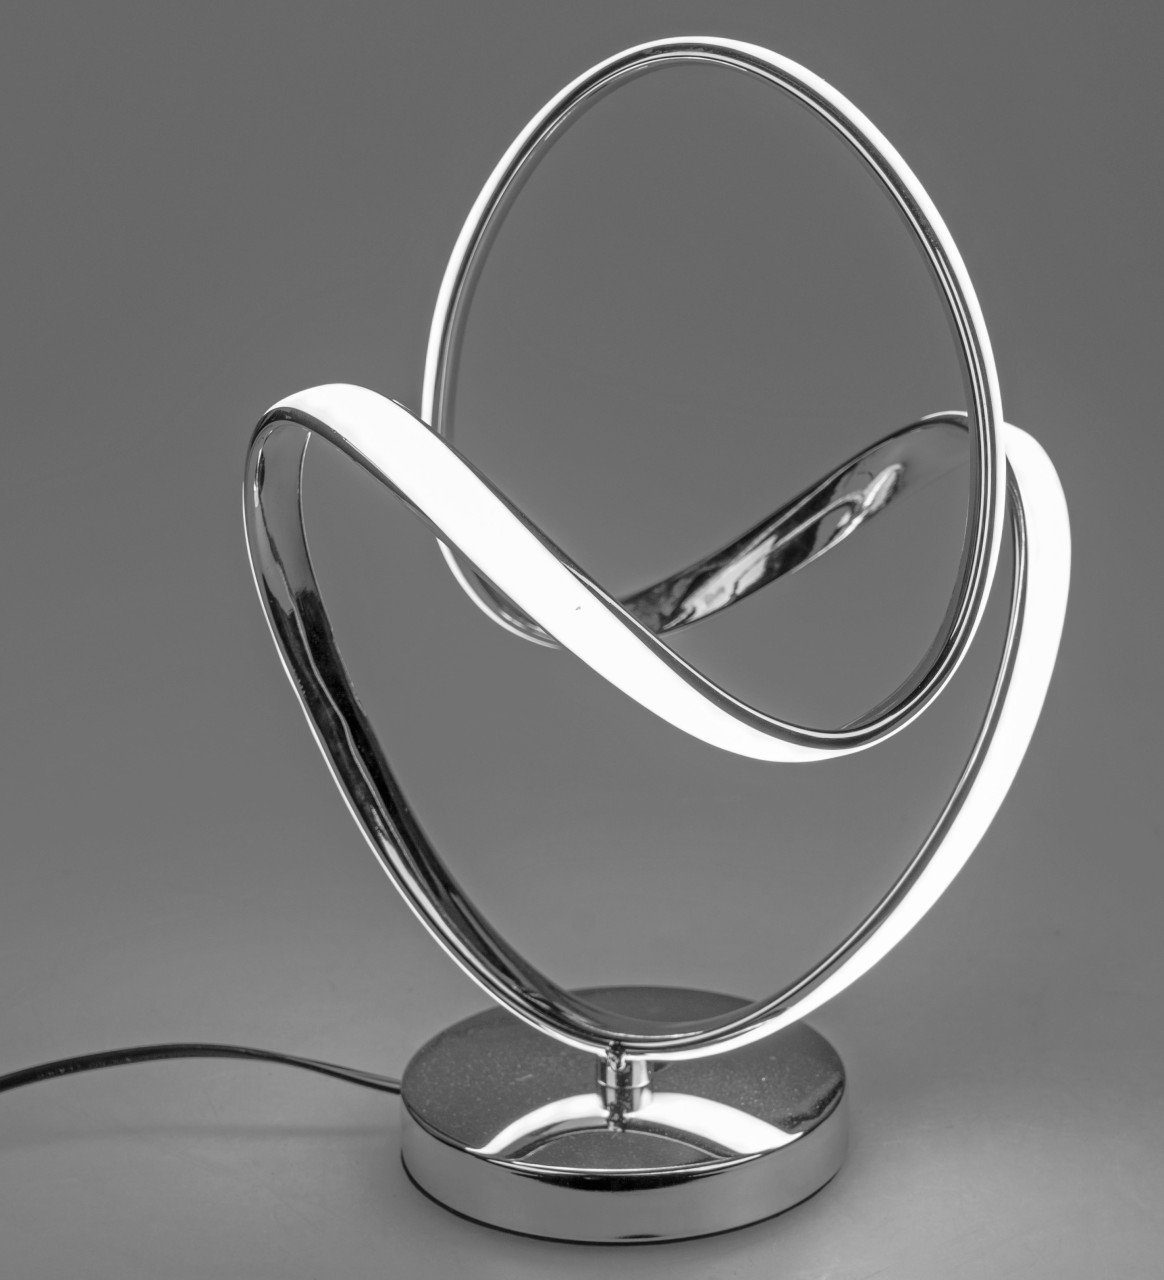 Silber B:25cm formano Metall LED H:33cm Lichtband, Tischleuchte